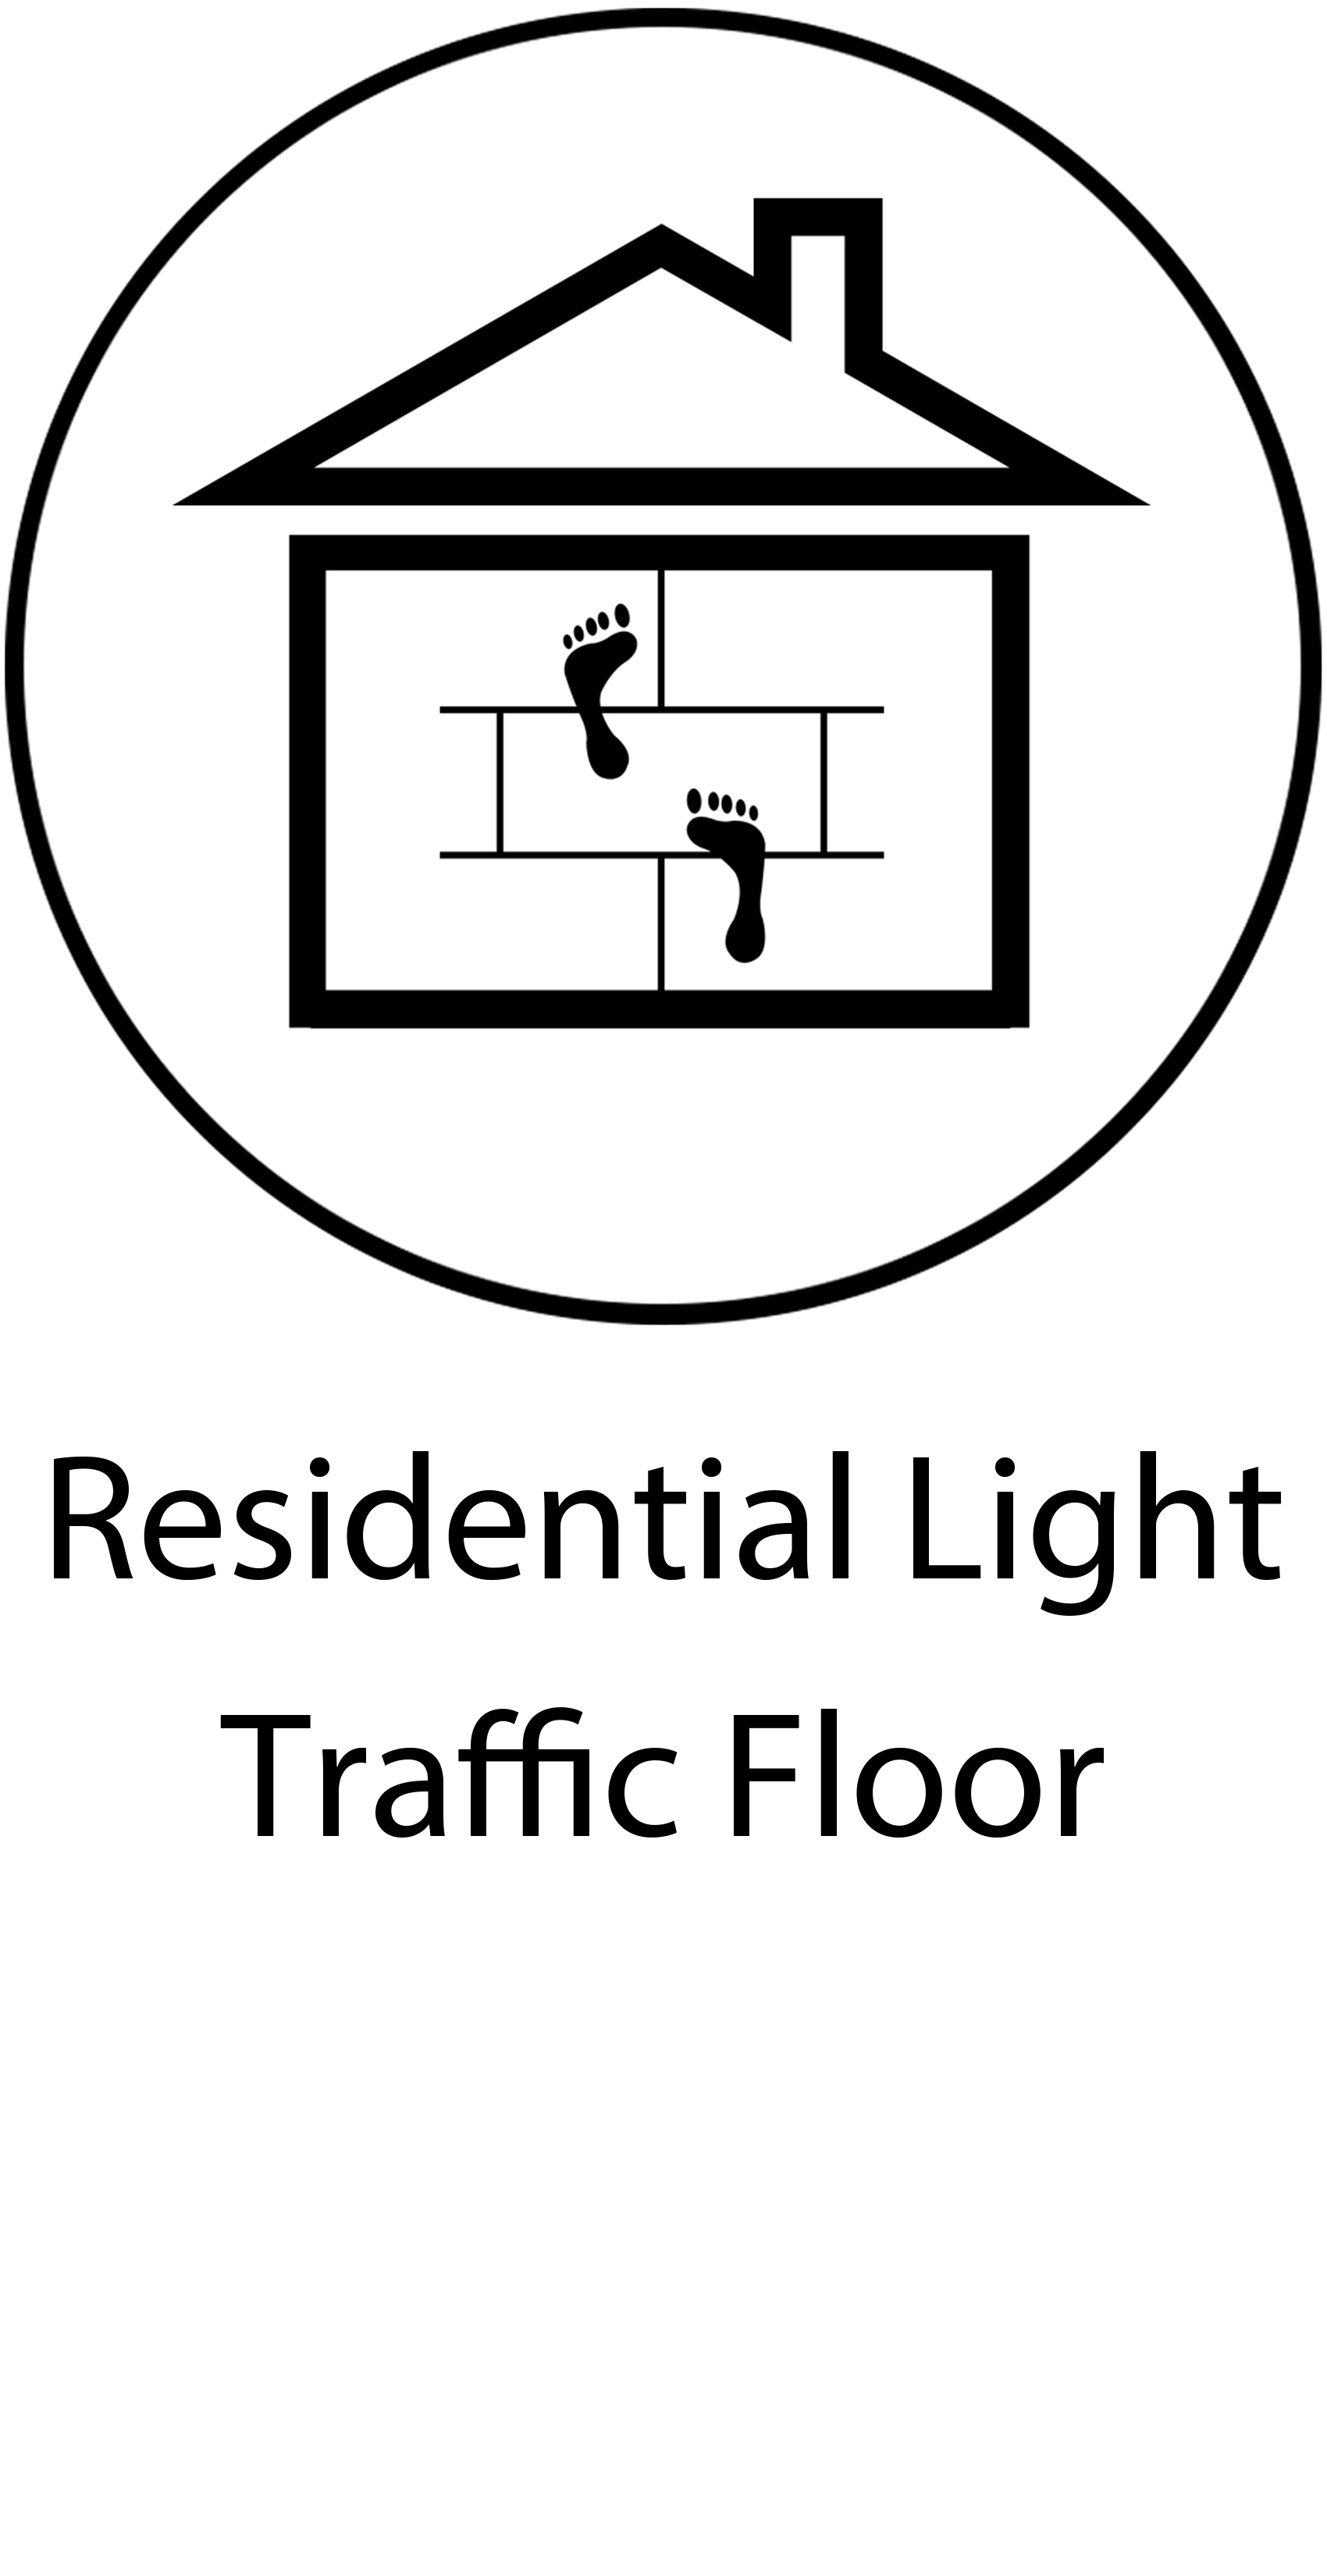 Residential light traffic floor.jpg